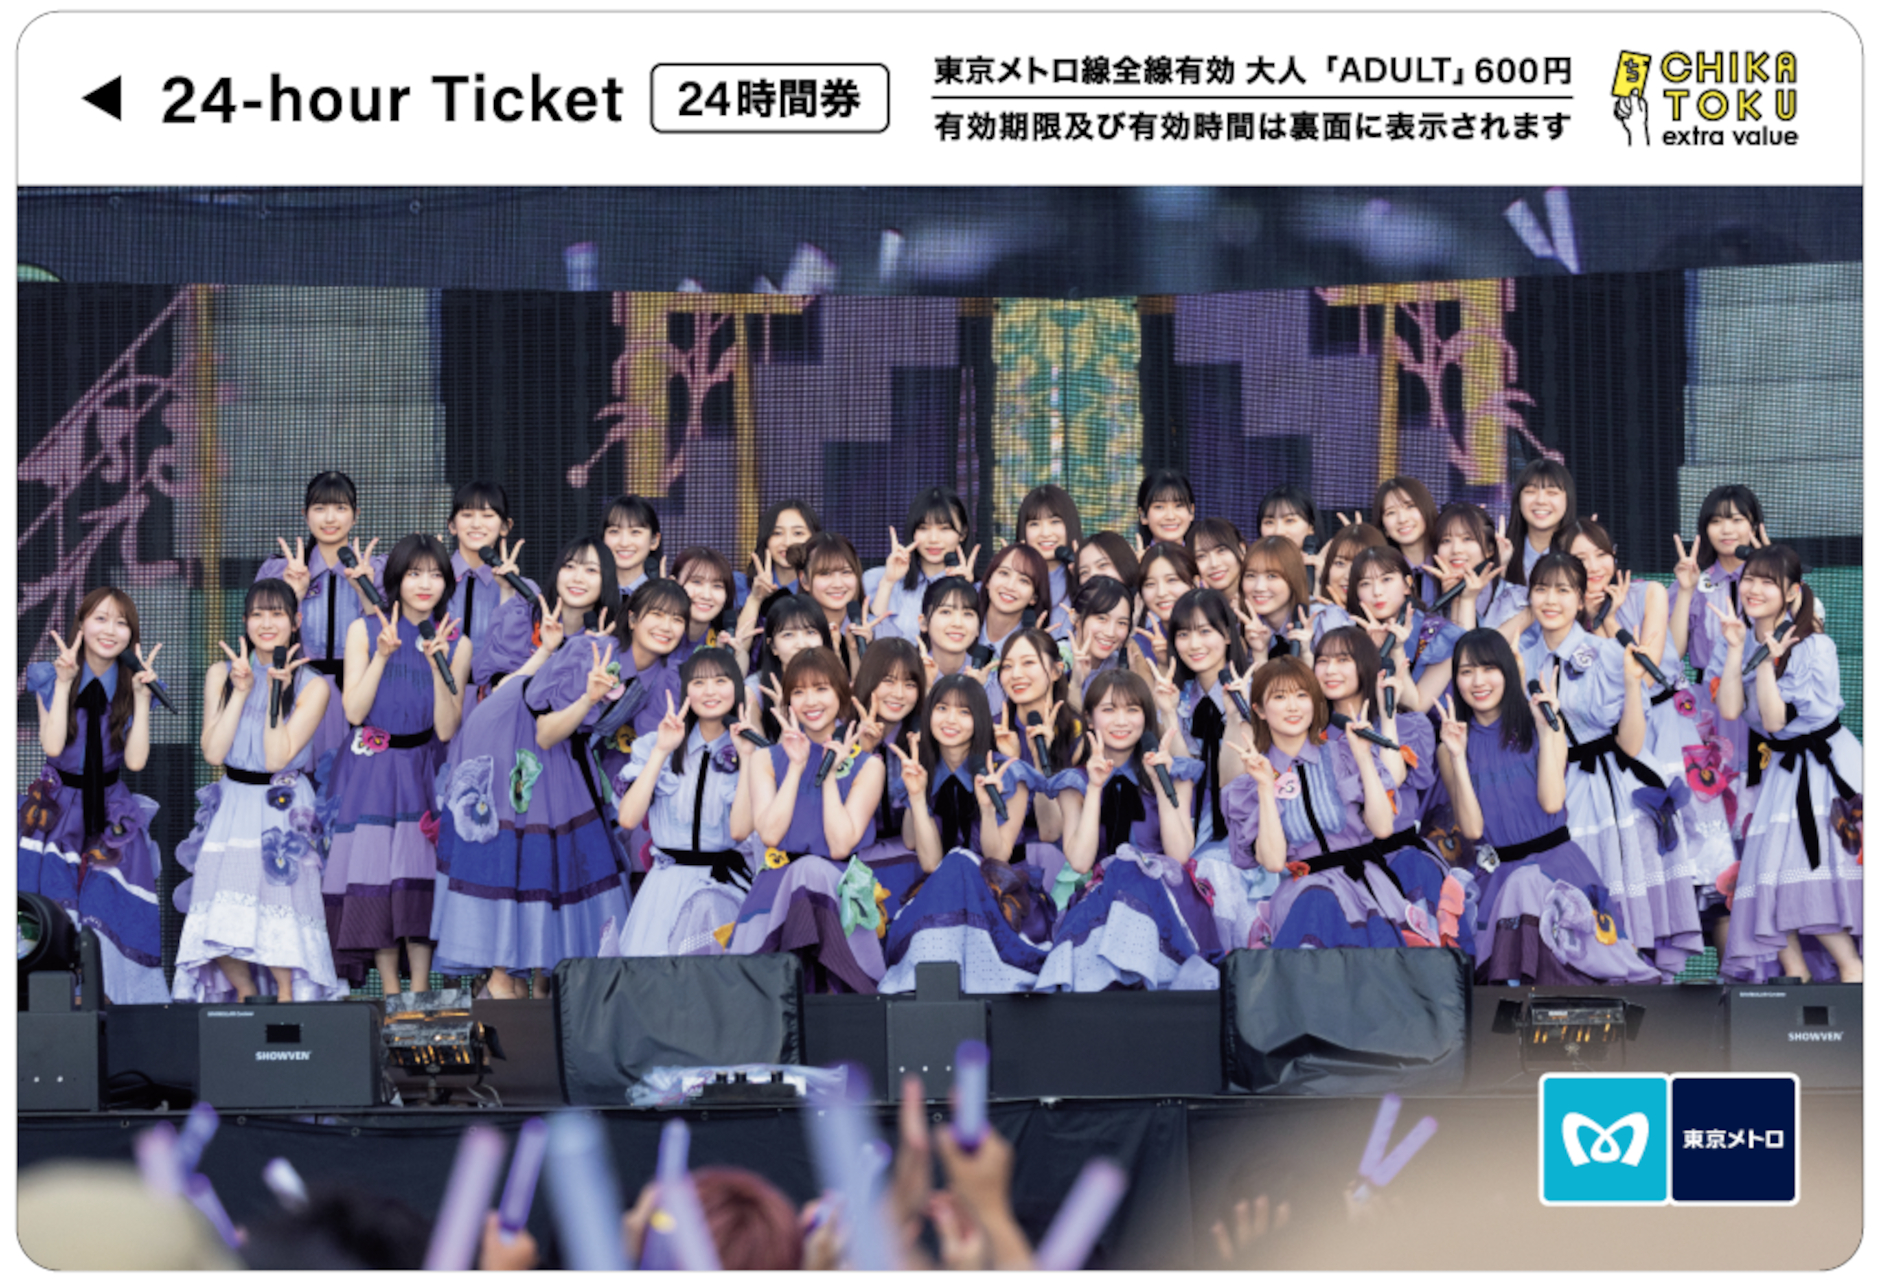 東京メトロ、乃木坂46のオリジナル24時間券を発売。6枚+専用台紙の先着